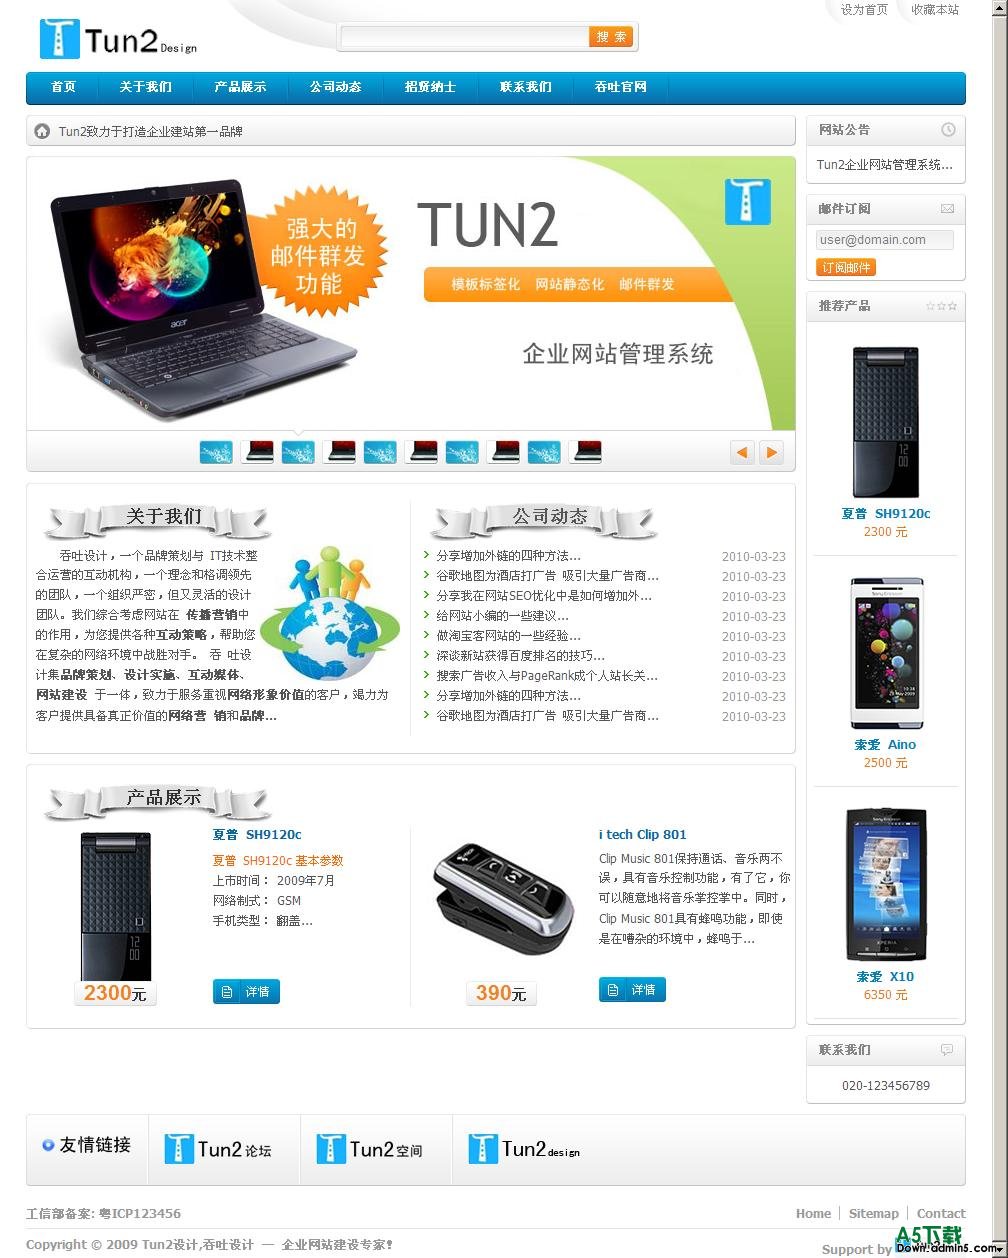 Tun2企业网站管理系统 v3.0.5插图源码资源库